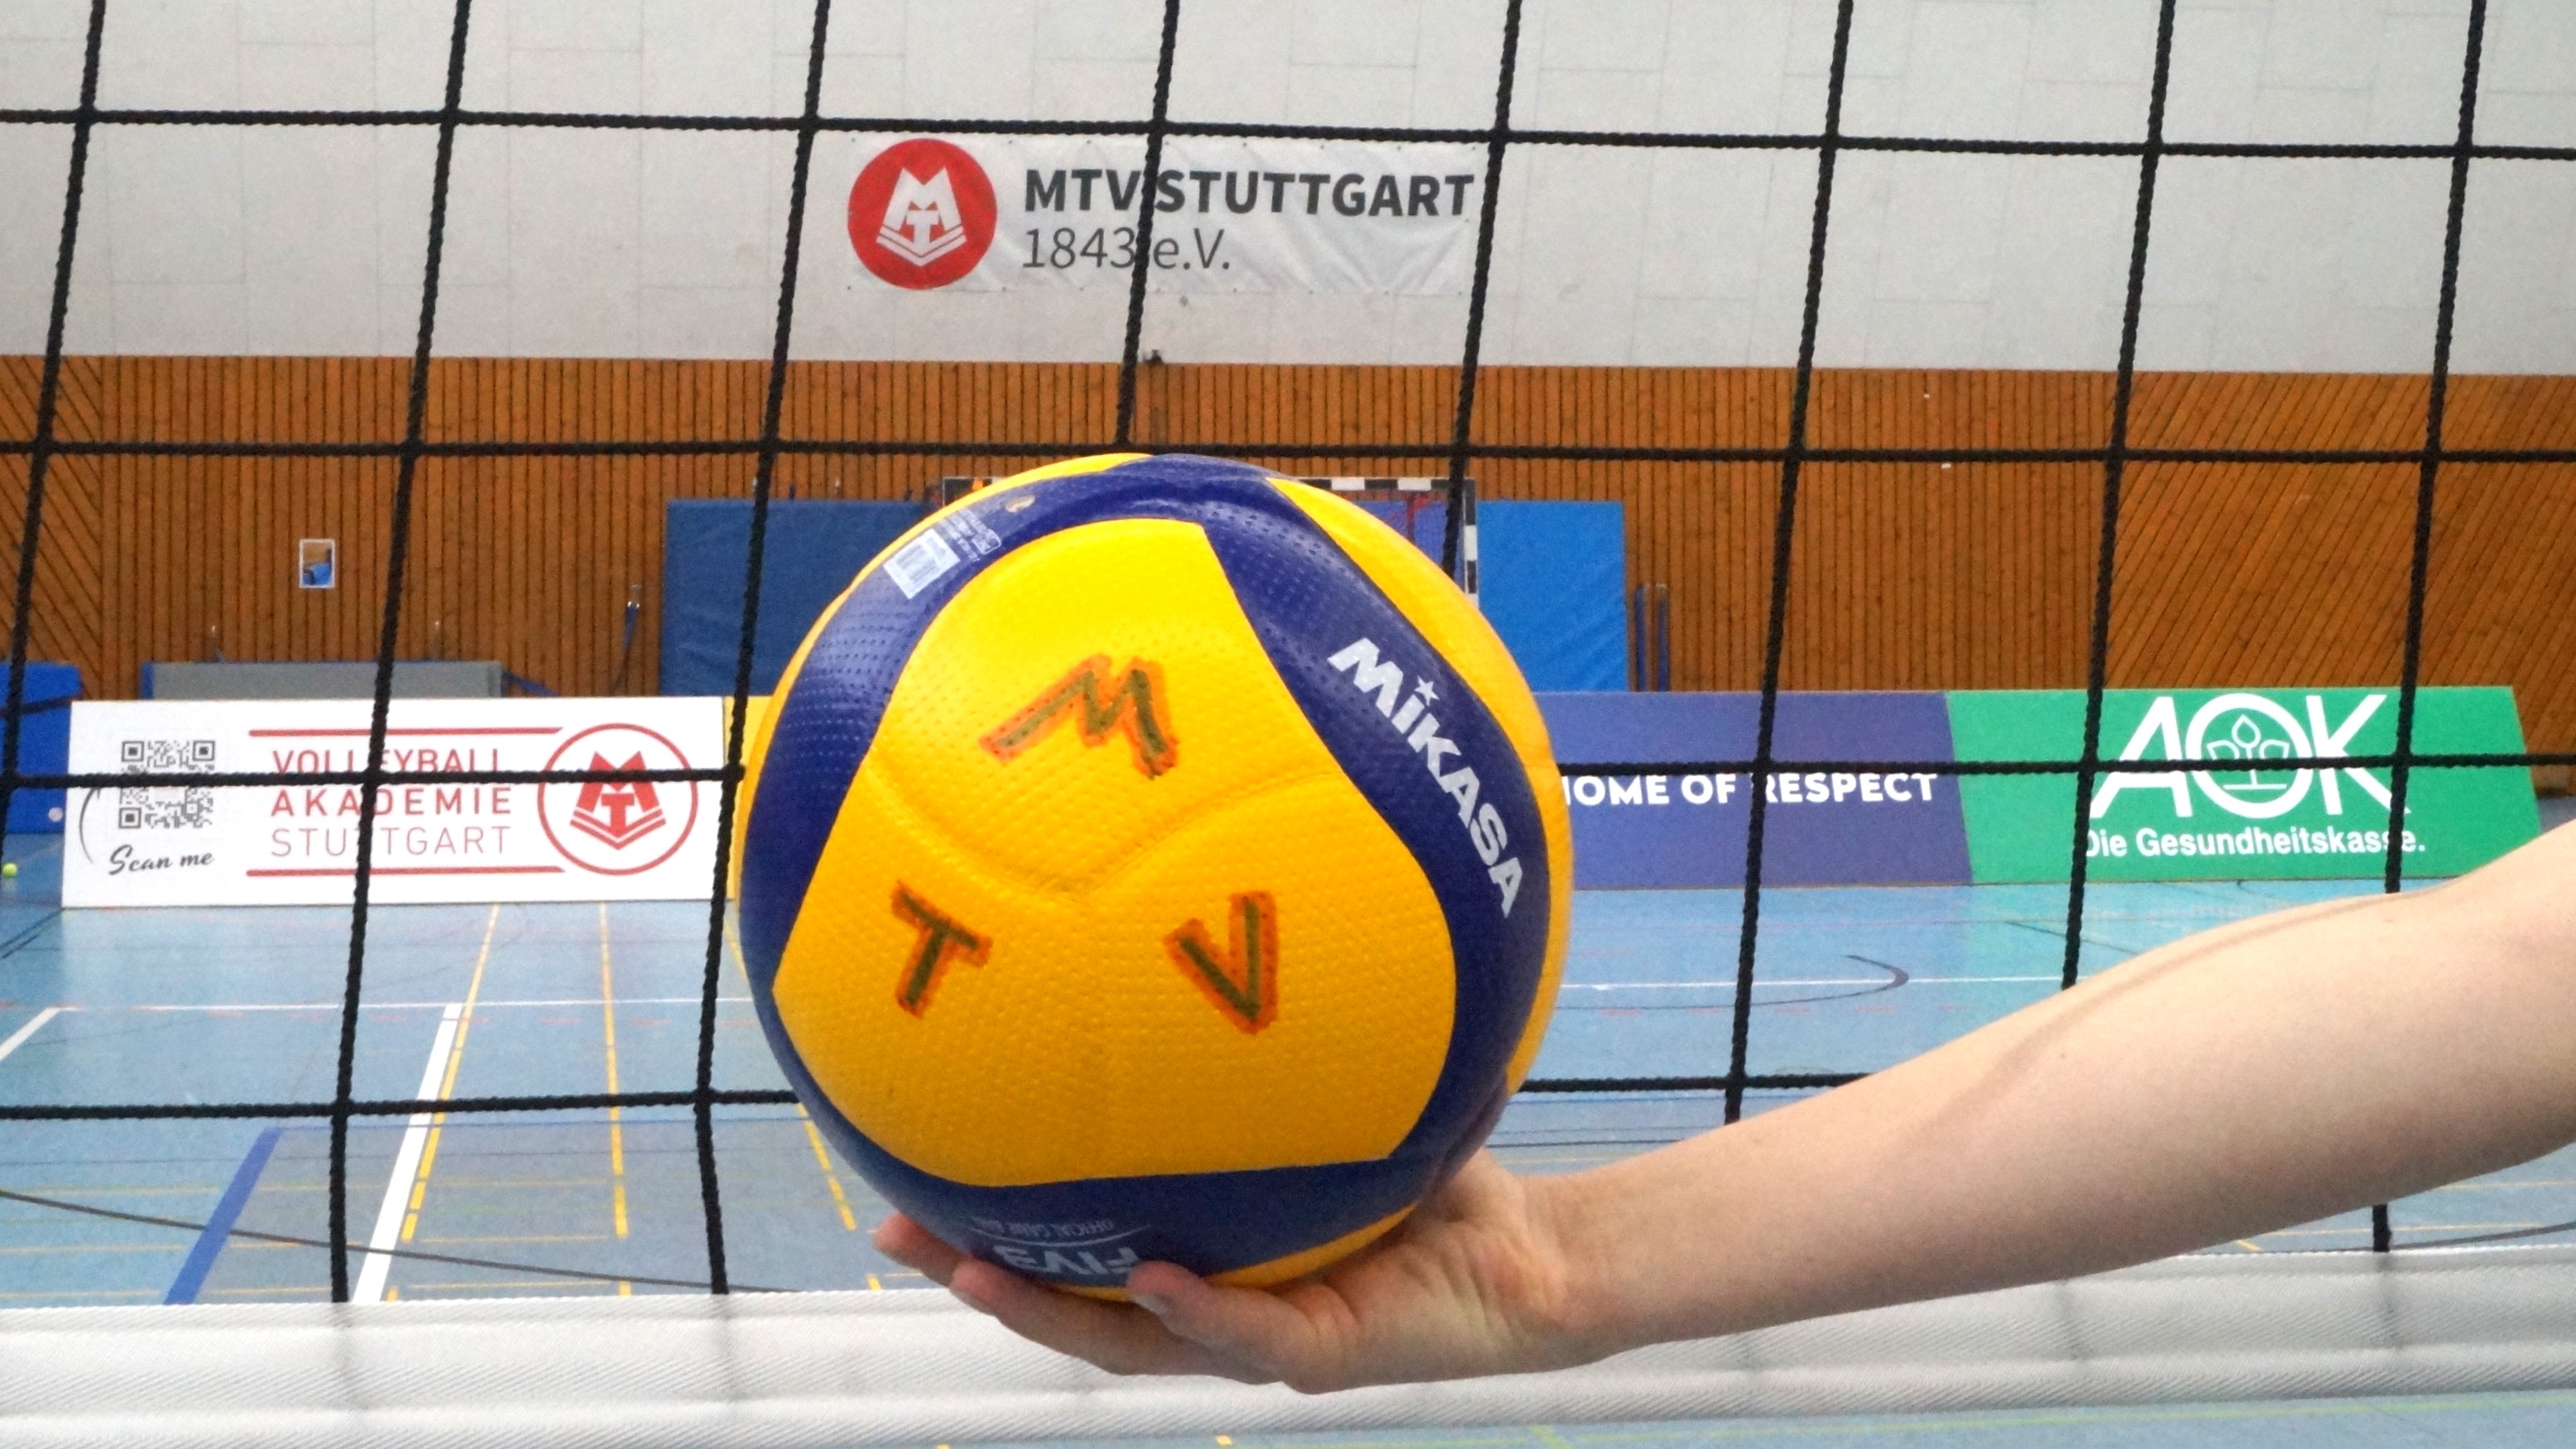 Bild zeigt einen Volleyball, der von einer Hand vor einem gespannten Volleyballnetz gehalten wird. Der Ball trägt die Bezeichnung "M T V"; im Hintergrund ist der Schriftzug "MTV Stuttgart 1843 e.V." zu sehen.